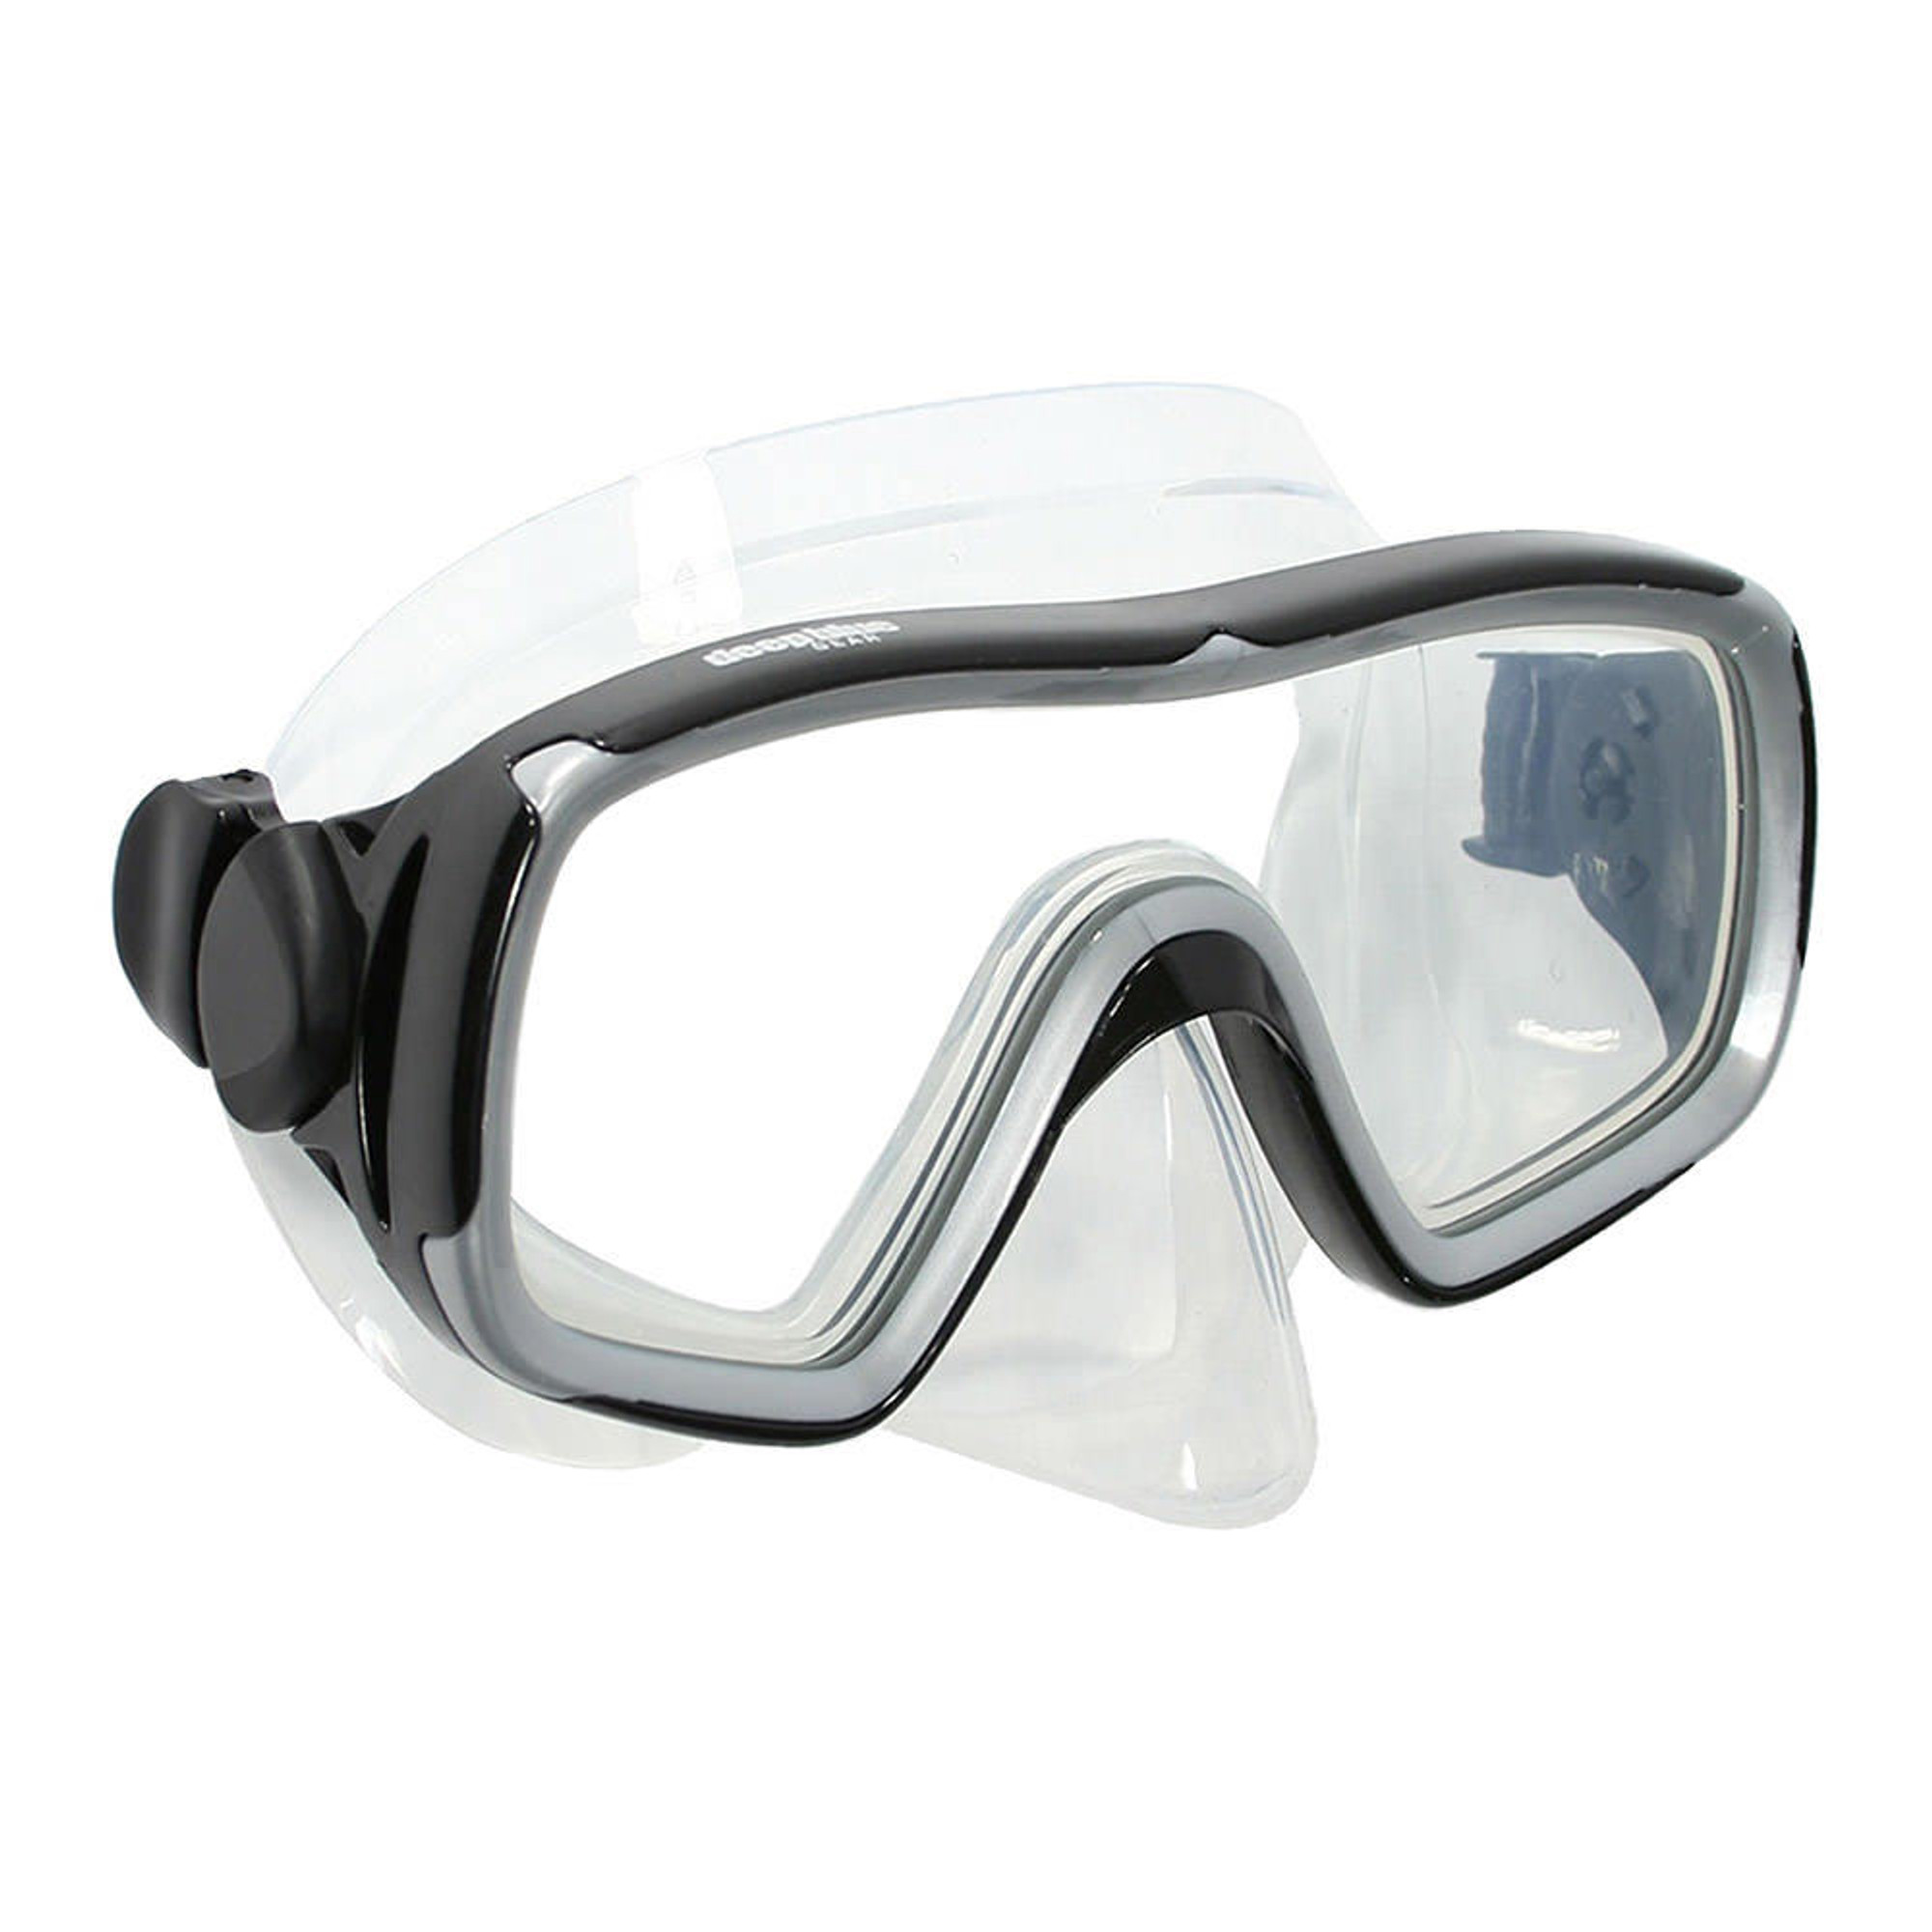 Montego - Diving/Snorkeling Mask